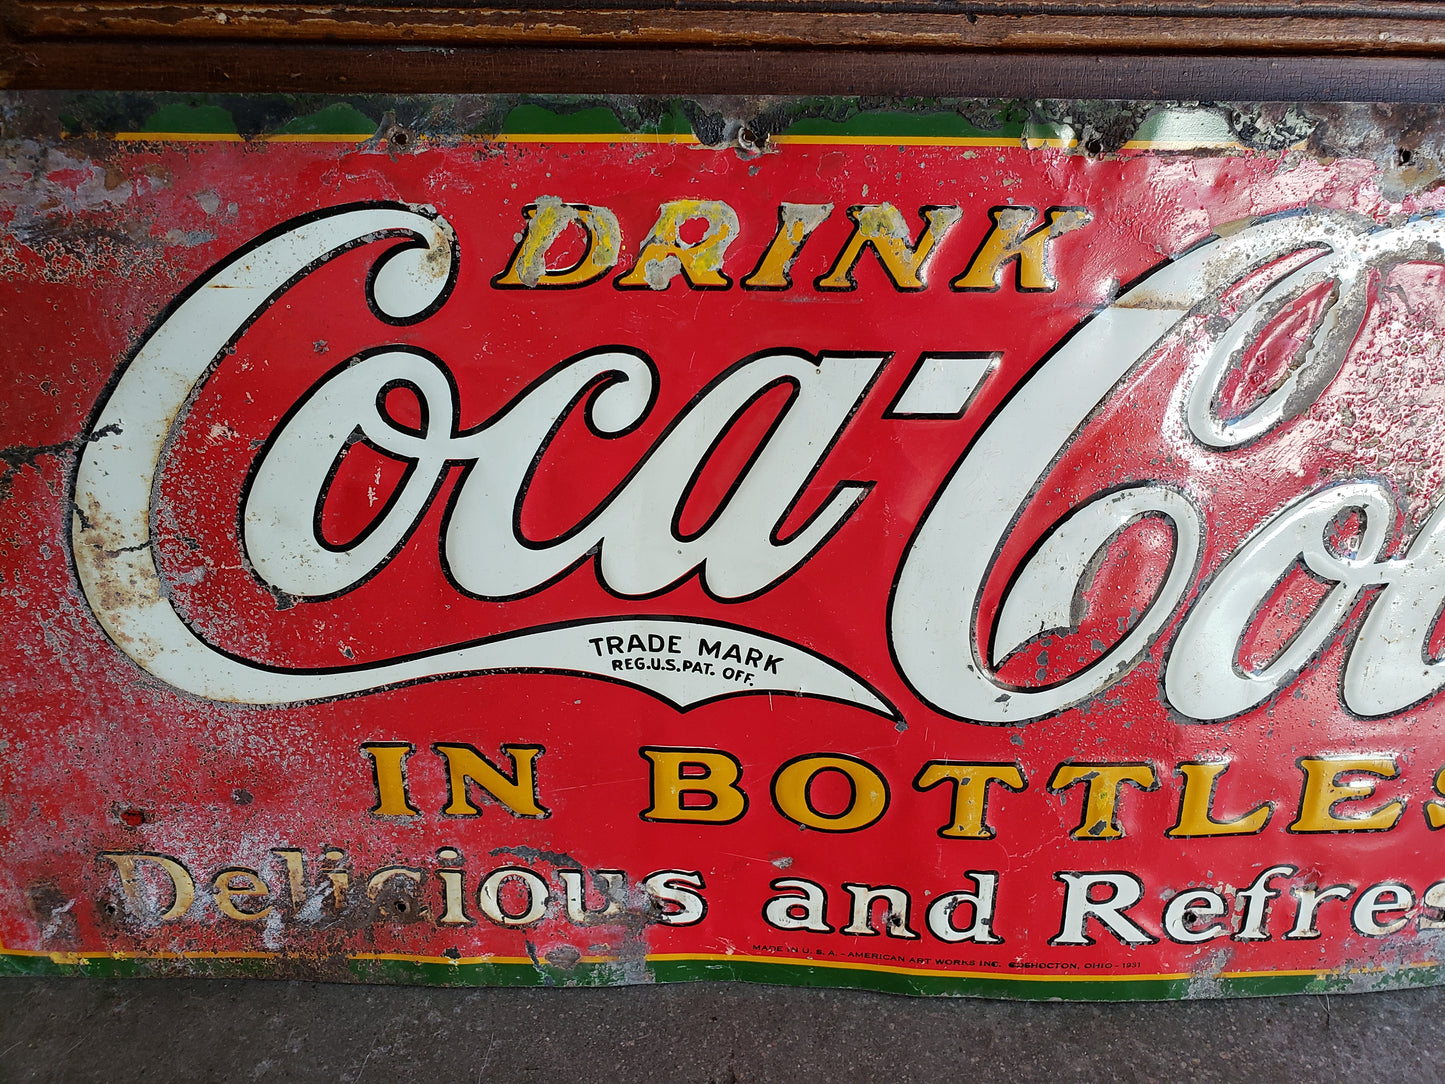 1931 Coca-Cola metal sign